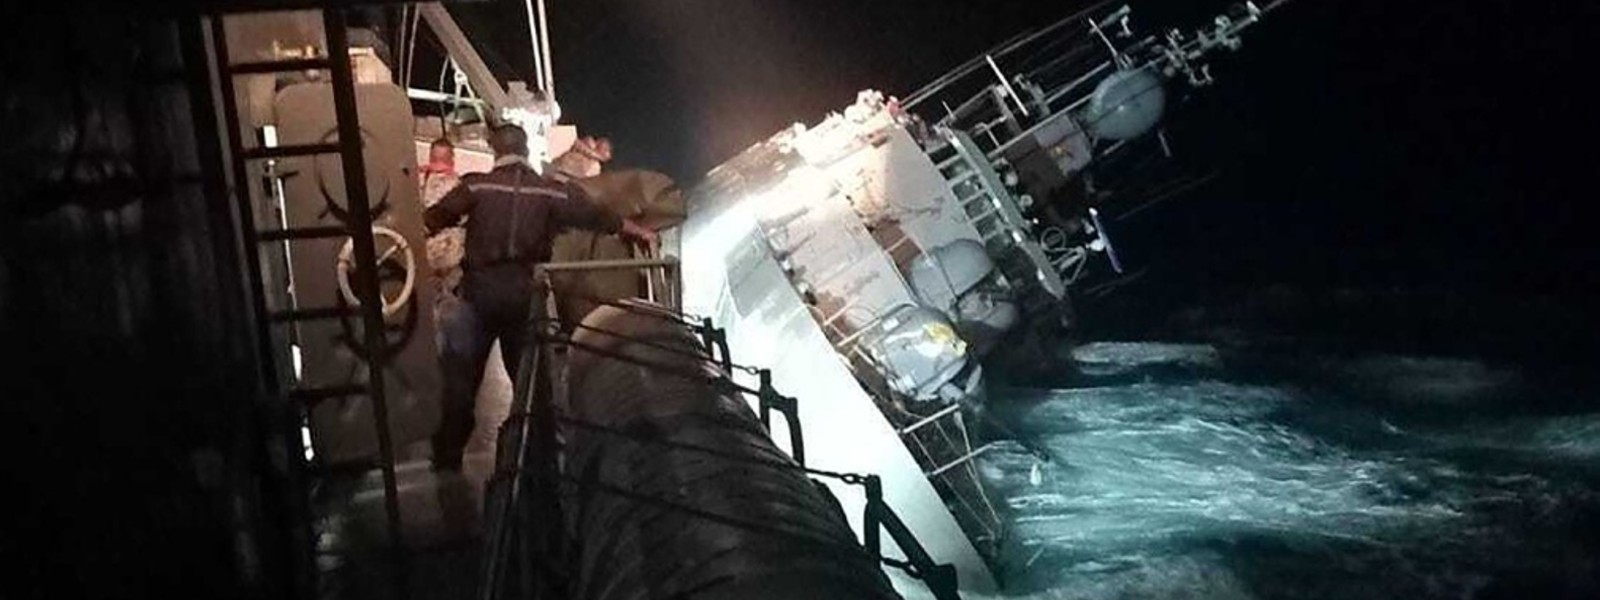 Thai warship sinks, 33 sailors missing